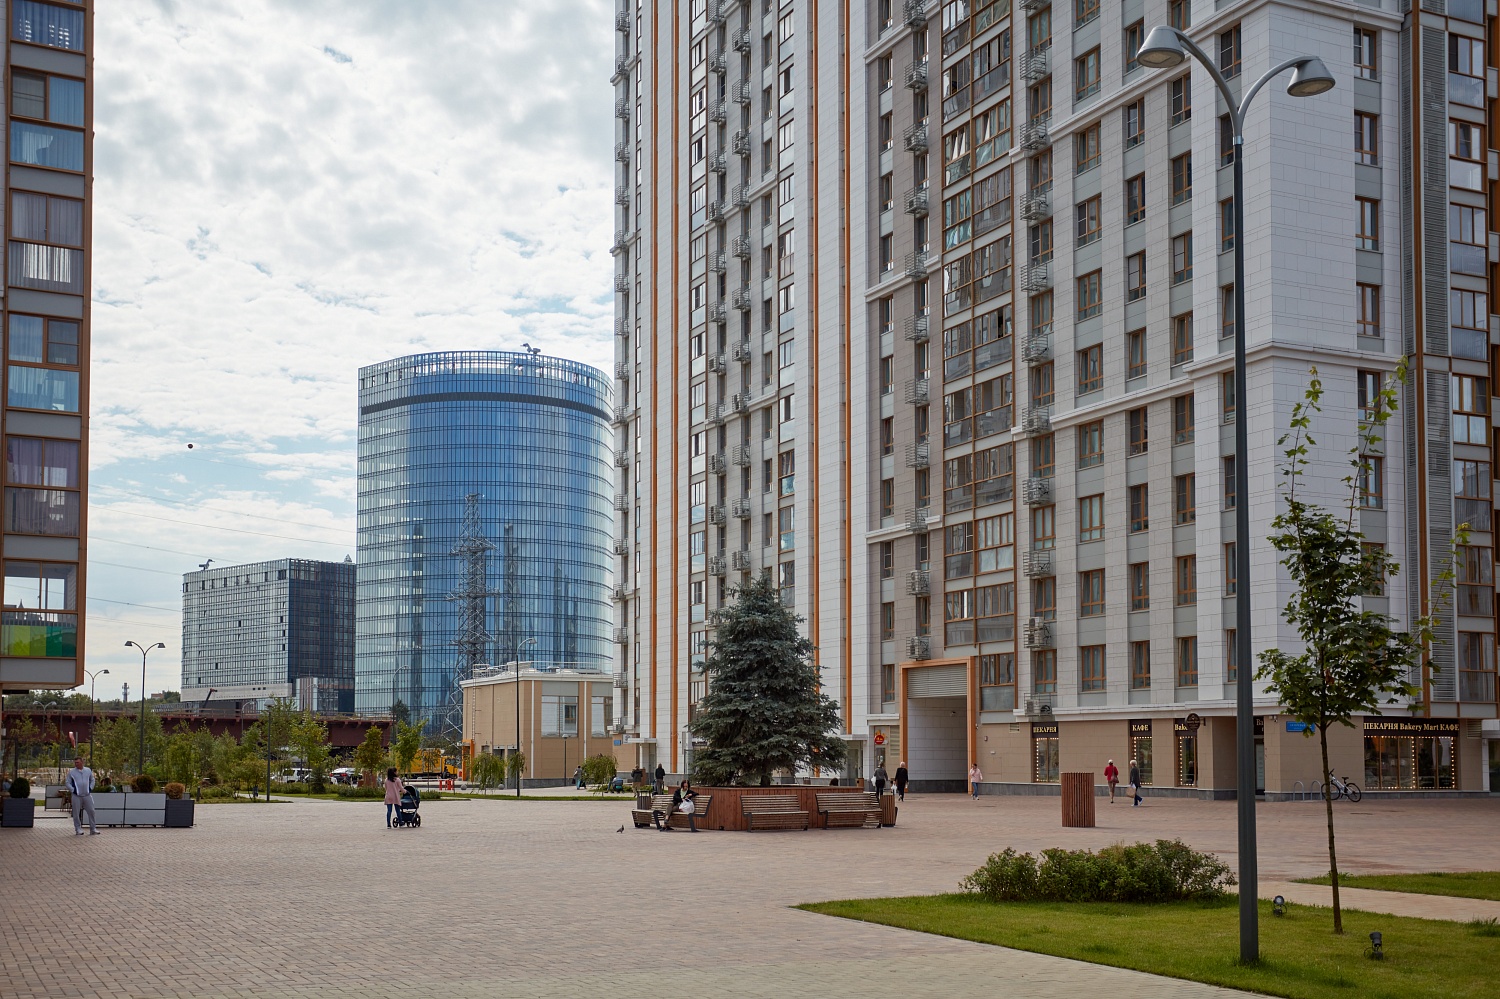 ЖК Ботанический сад, Москва (2020 год)